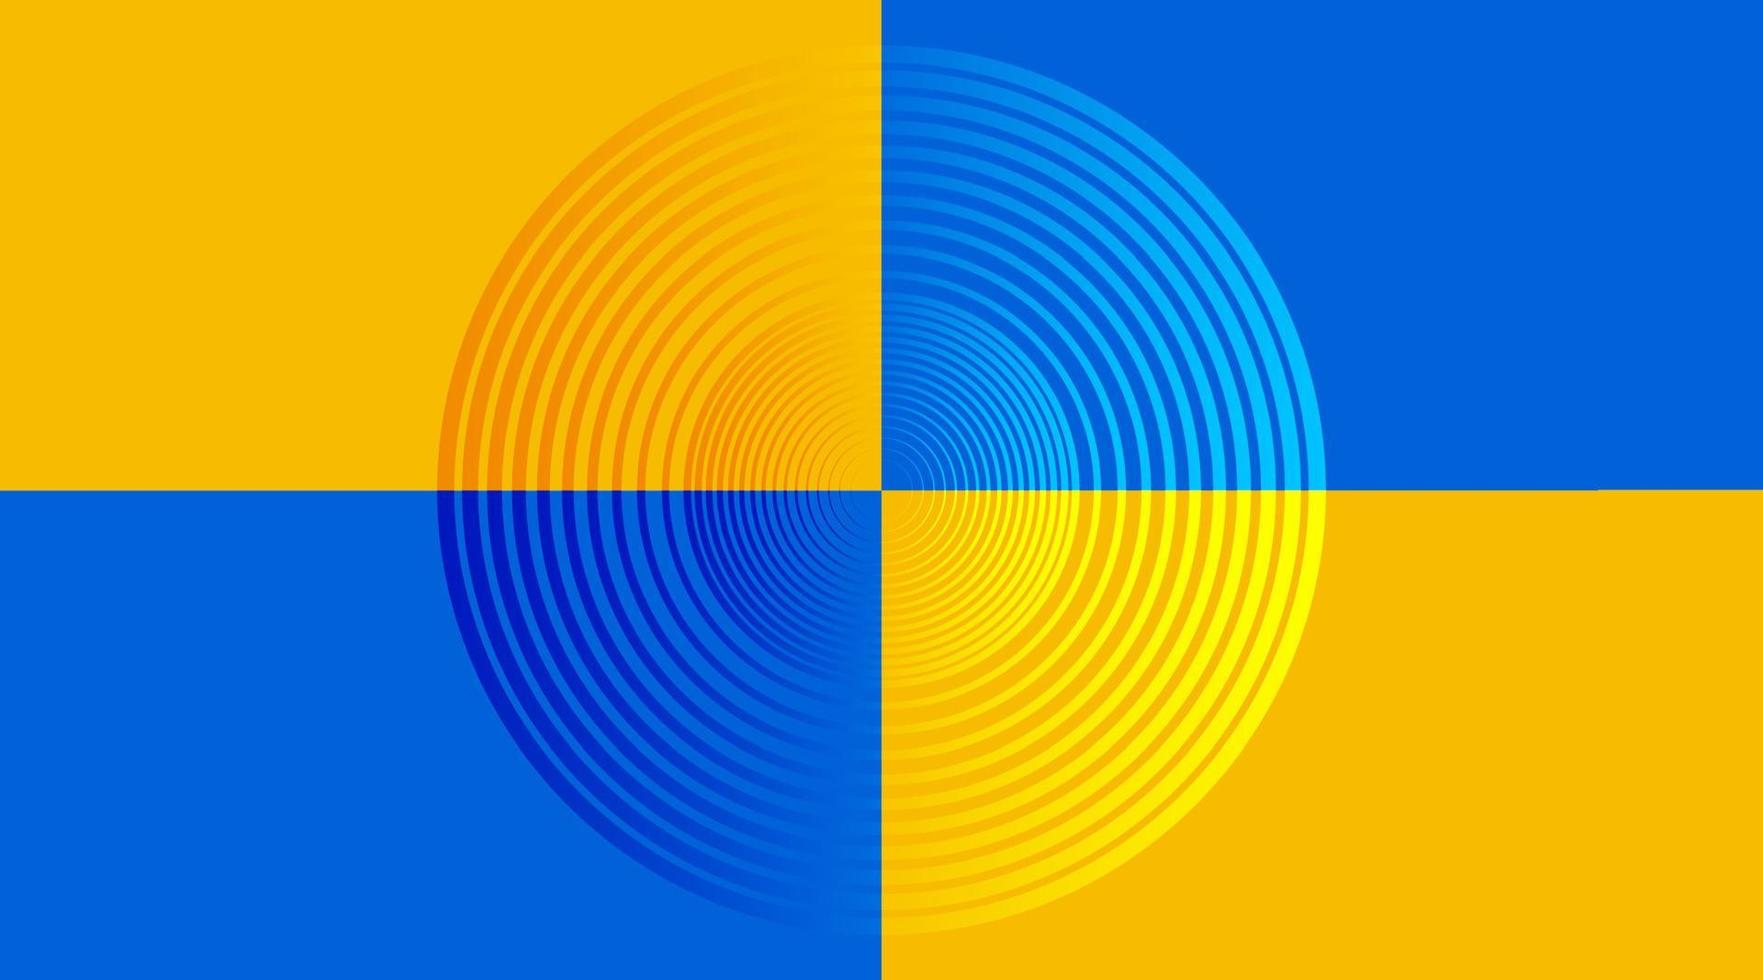 fond de vecteur, cercle au milieu, sur la couleur bleue et jaune vecteur